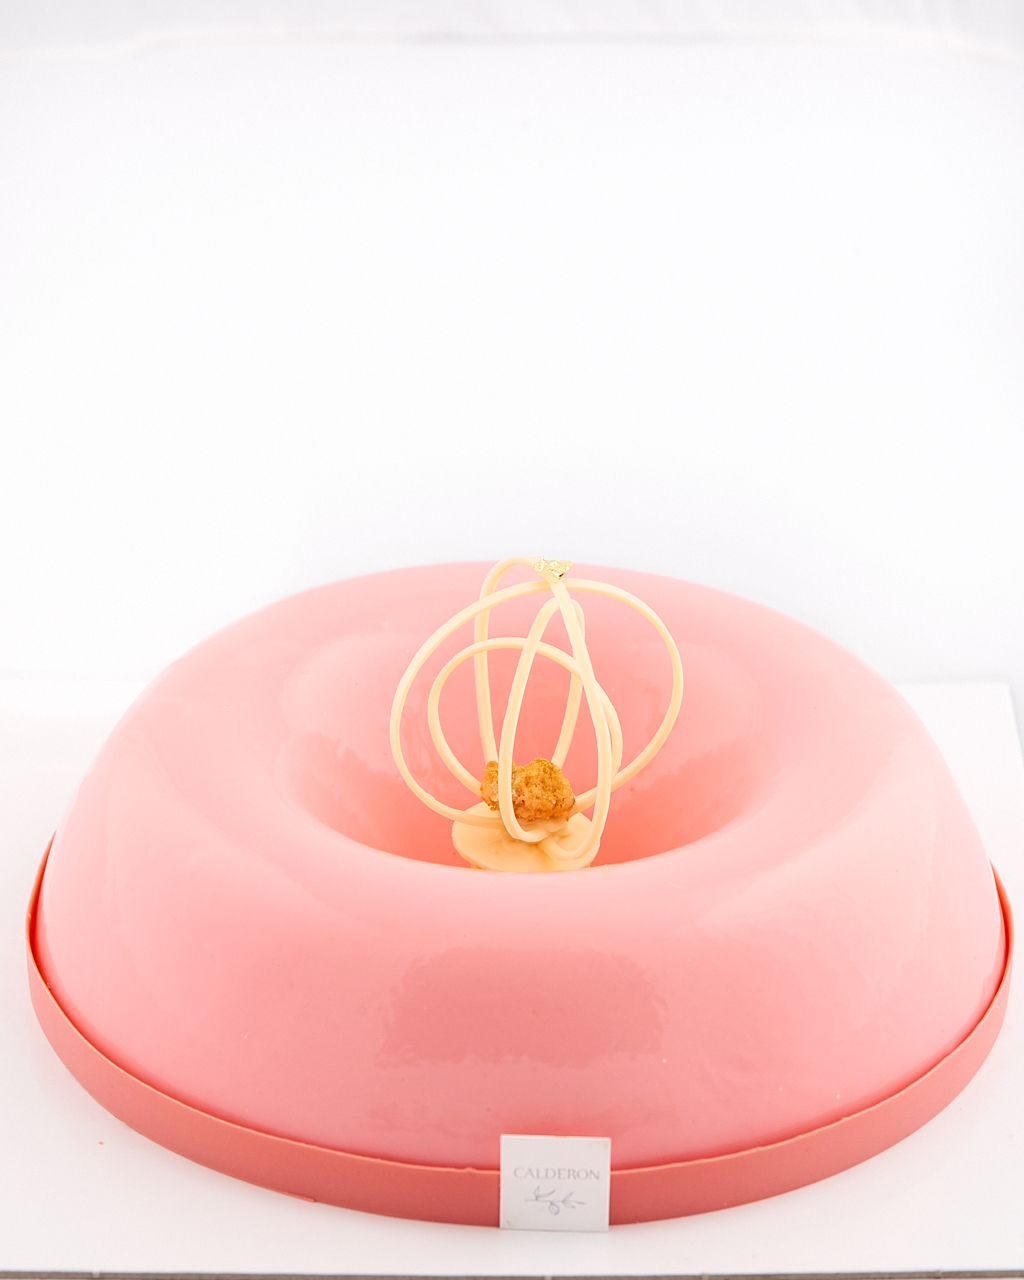 photo culinaire d'un gâteau savarin rose